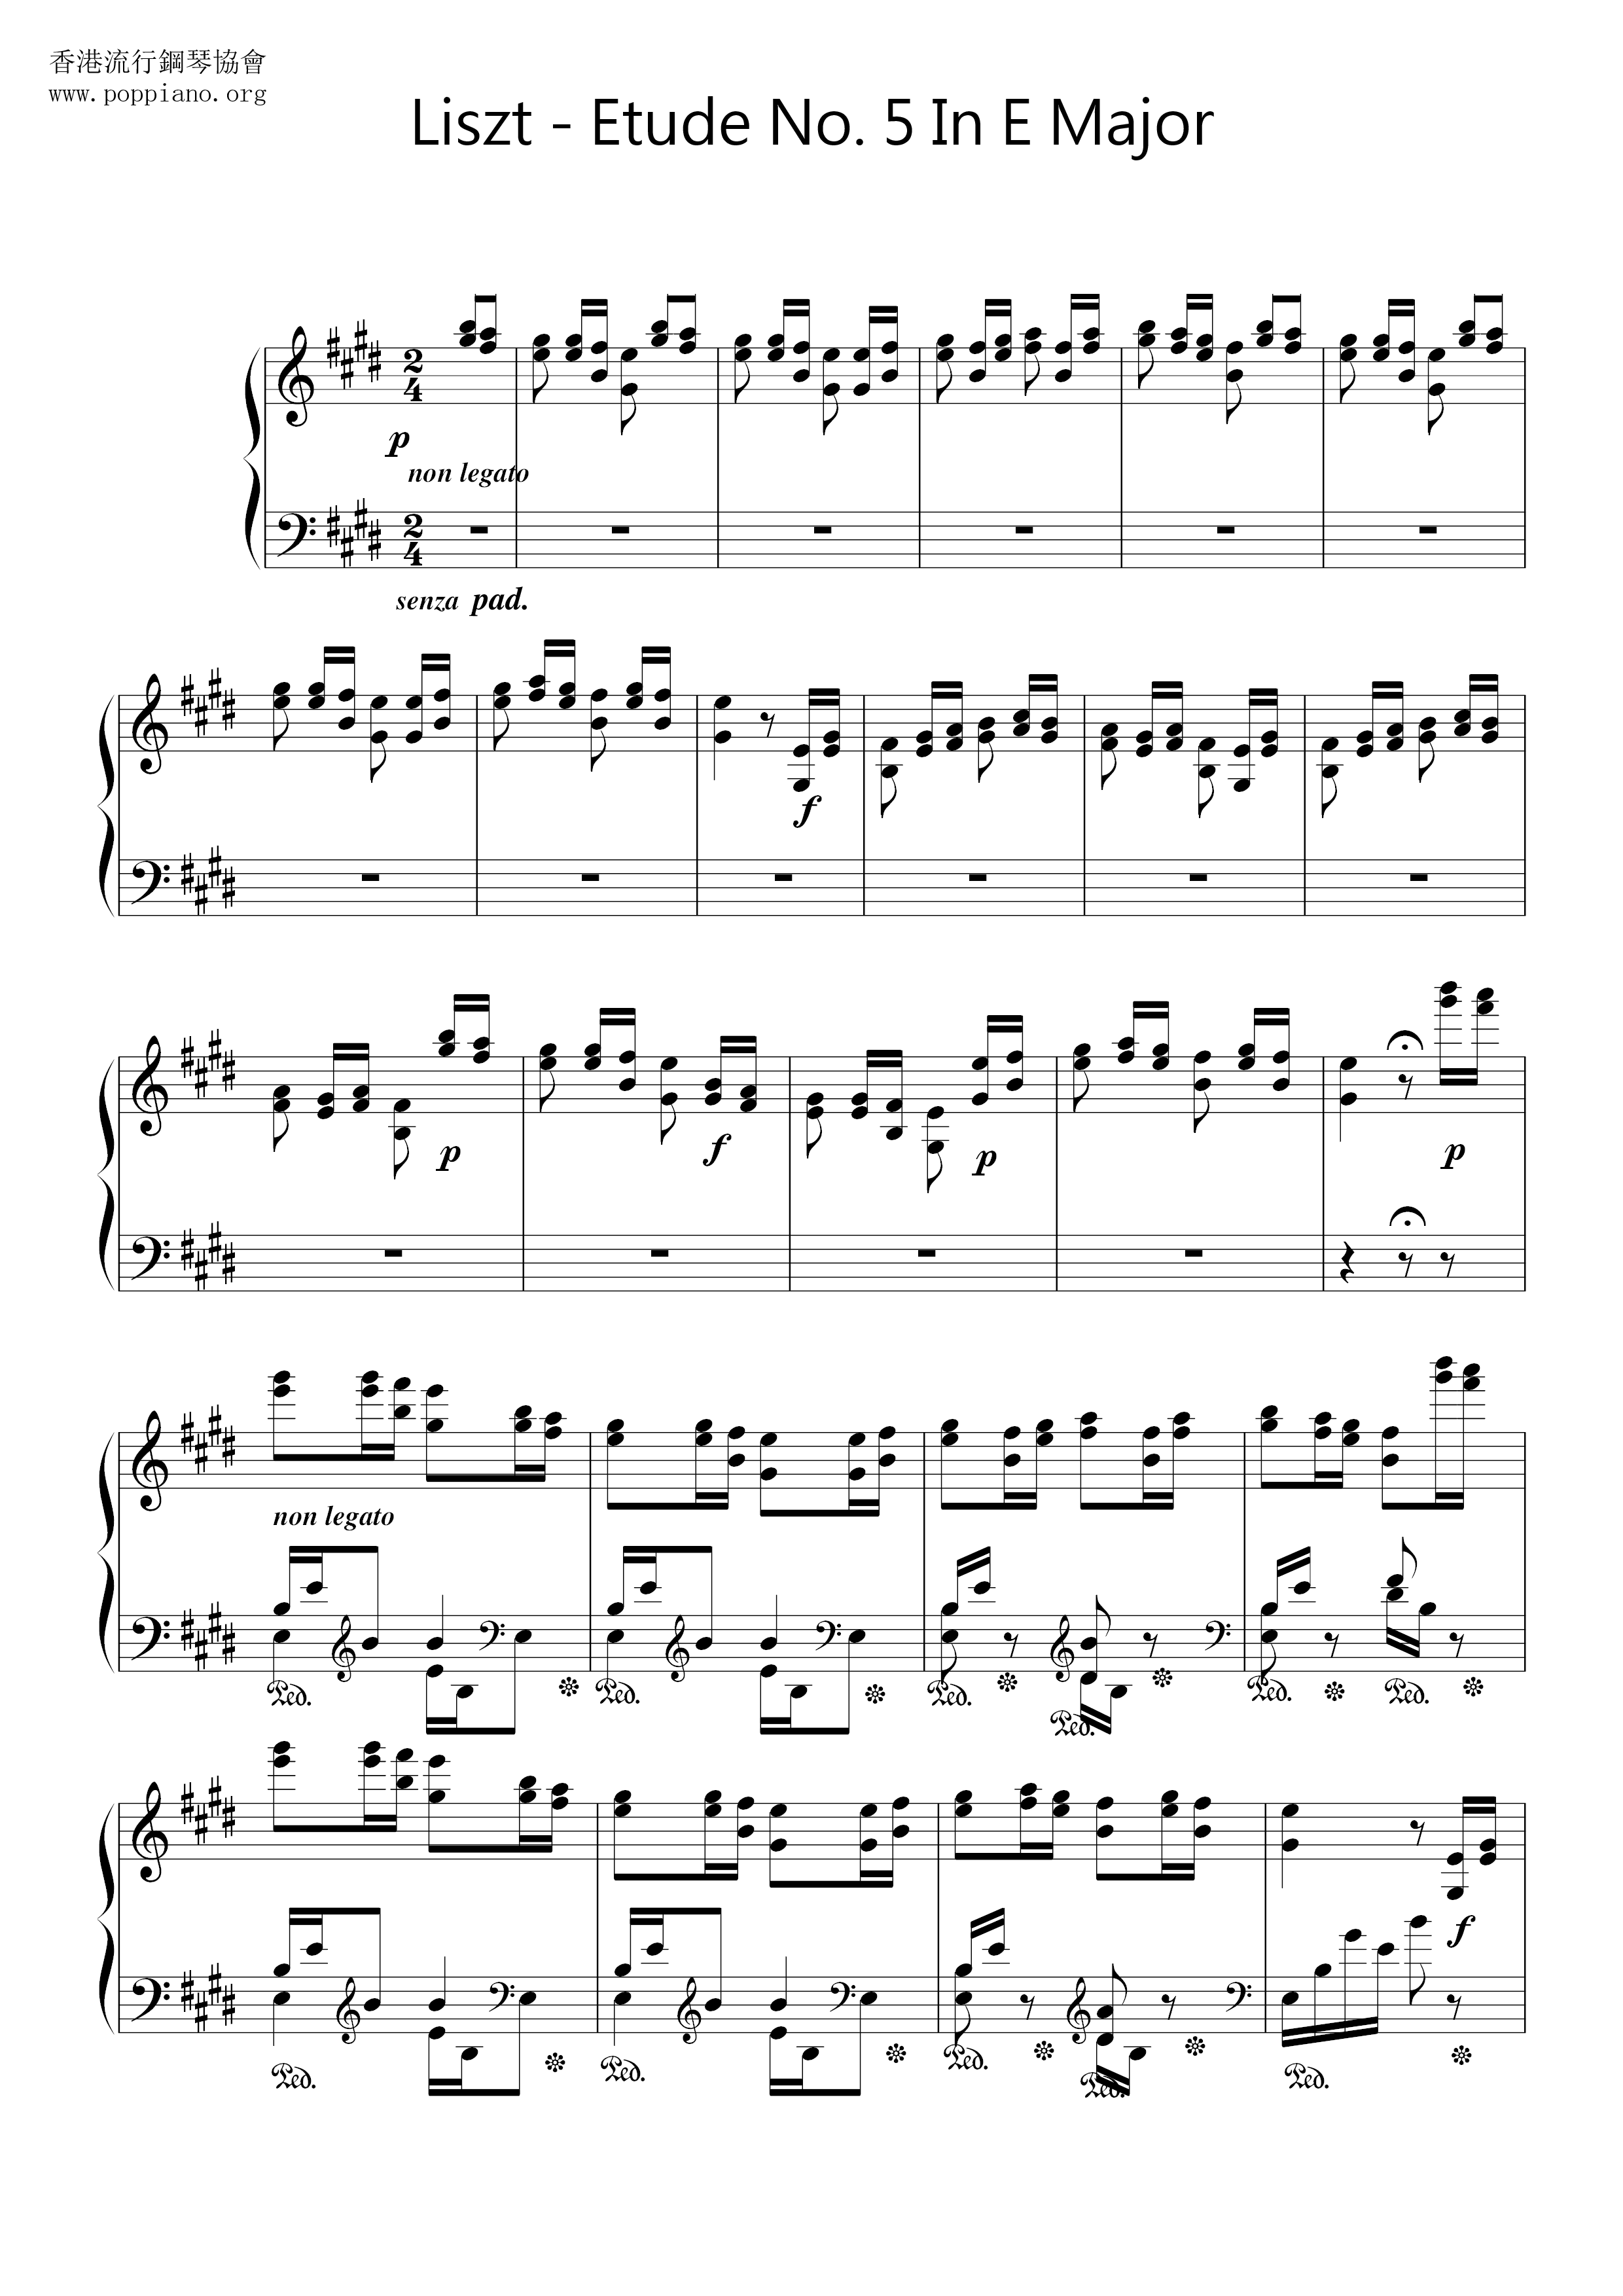 Etude No. 5 in E Major, La Chasse 狩獵 Score